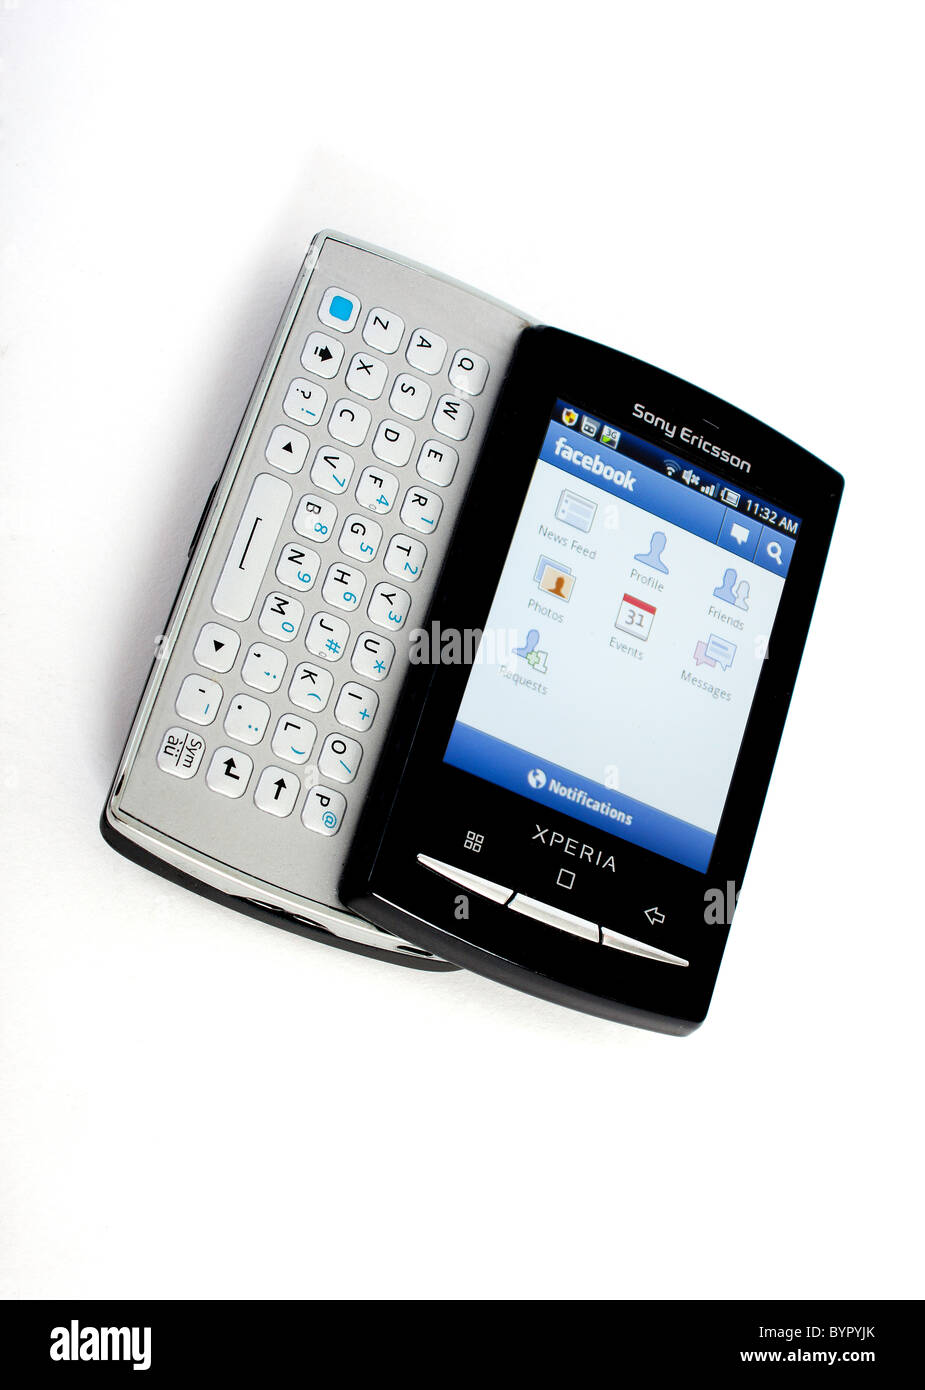 Das neue Sony Ericsson Xperia Mini pro Handy mit voller Slide-out QWERTY- Tastatur; Anzeigen von Google Androiden Facebook Stockfotografie - Alamy